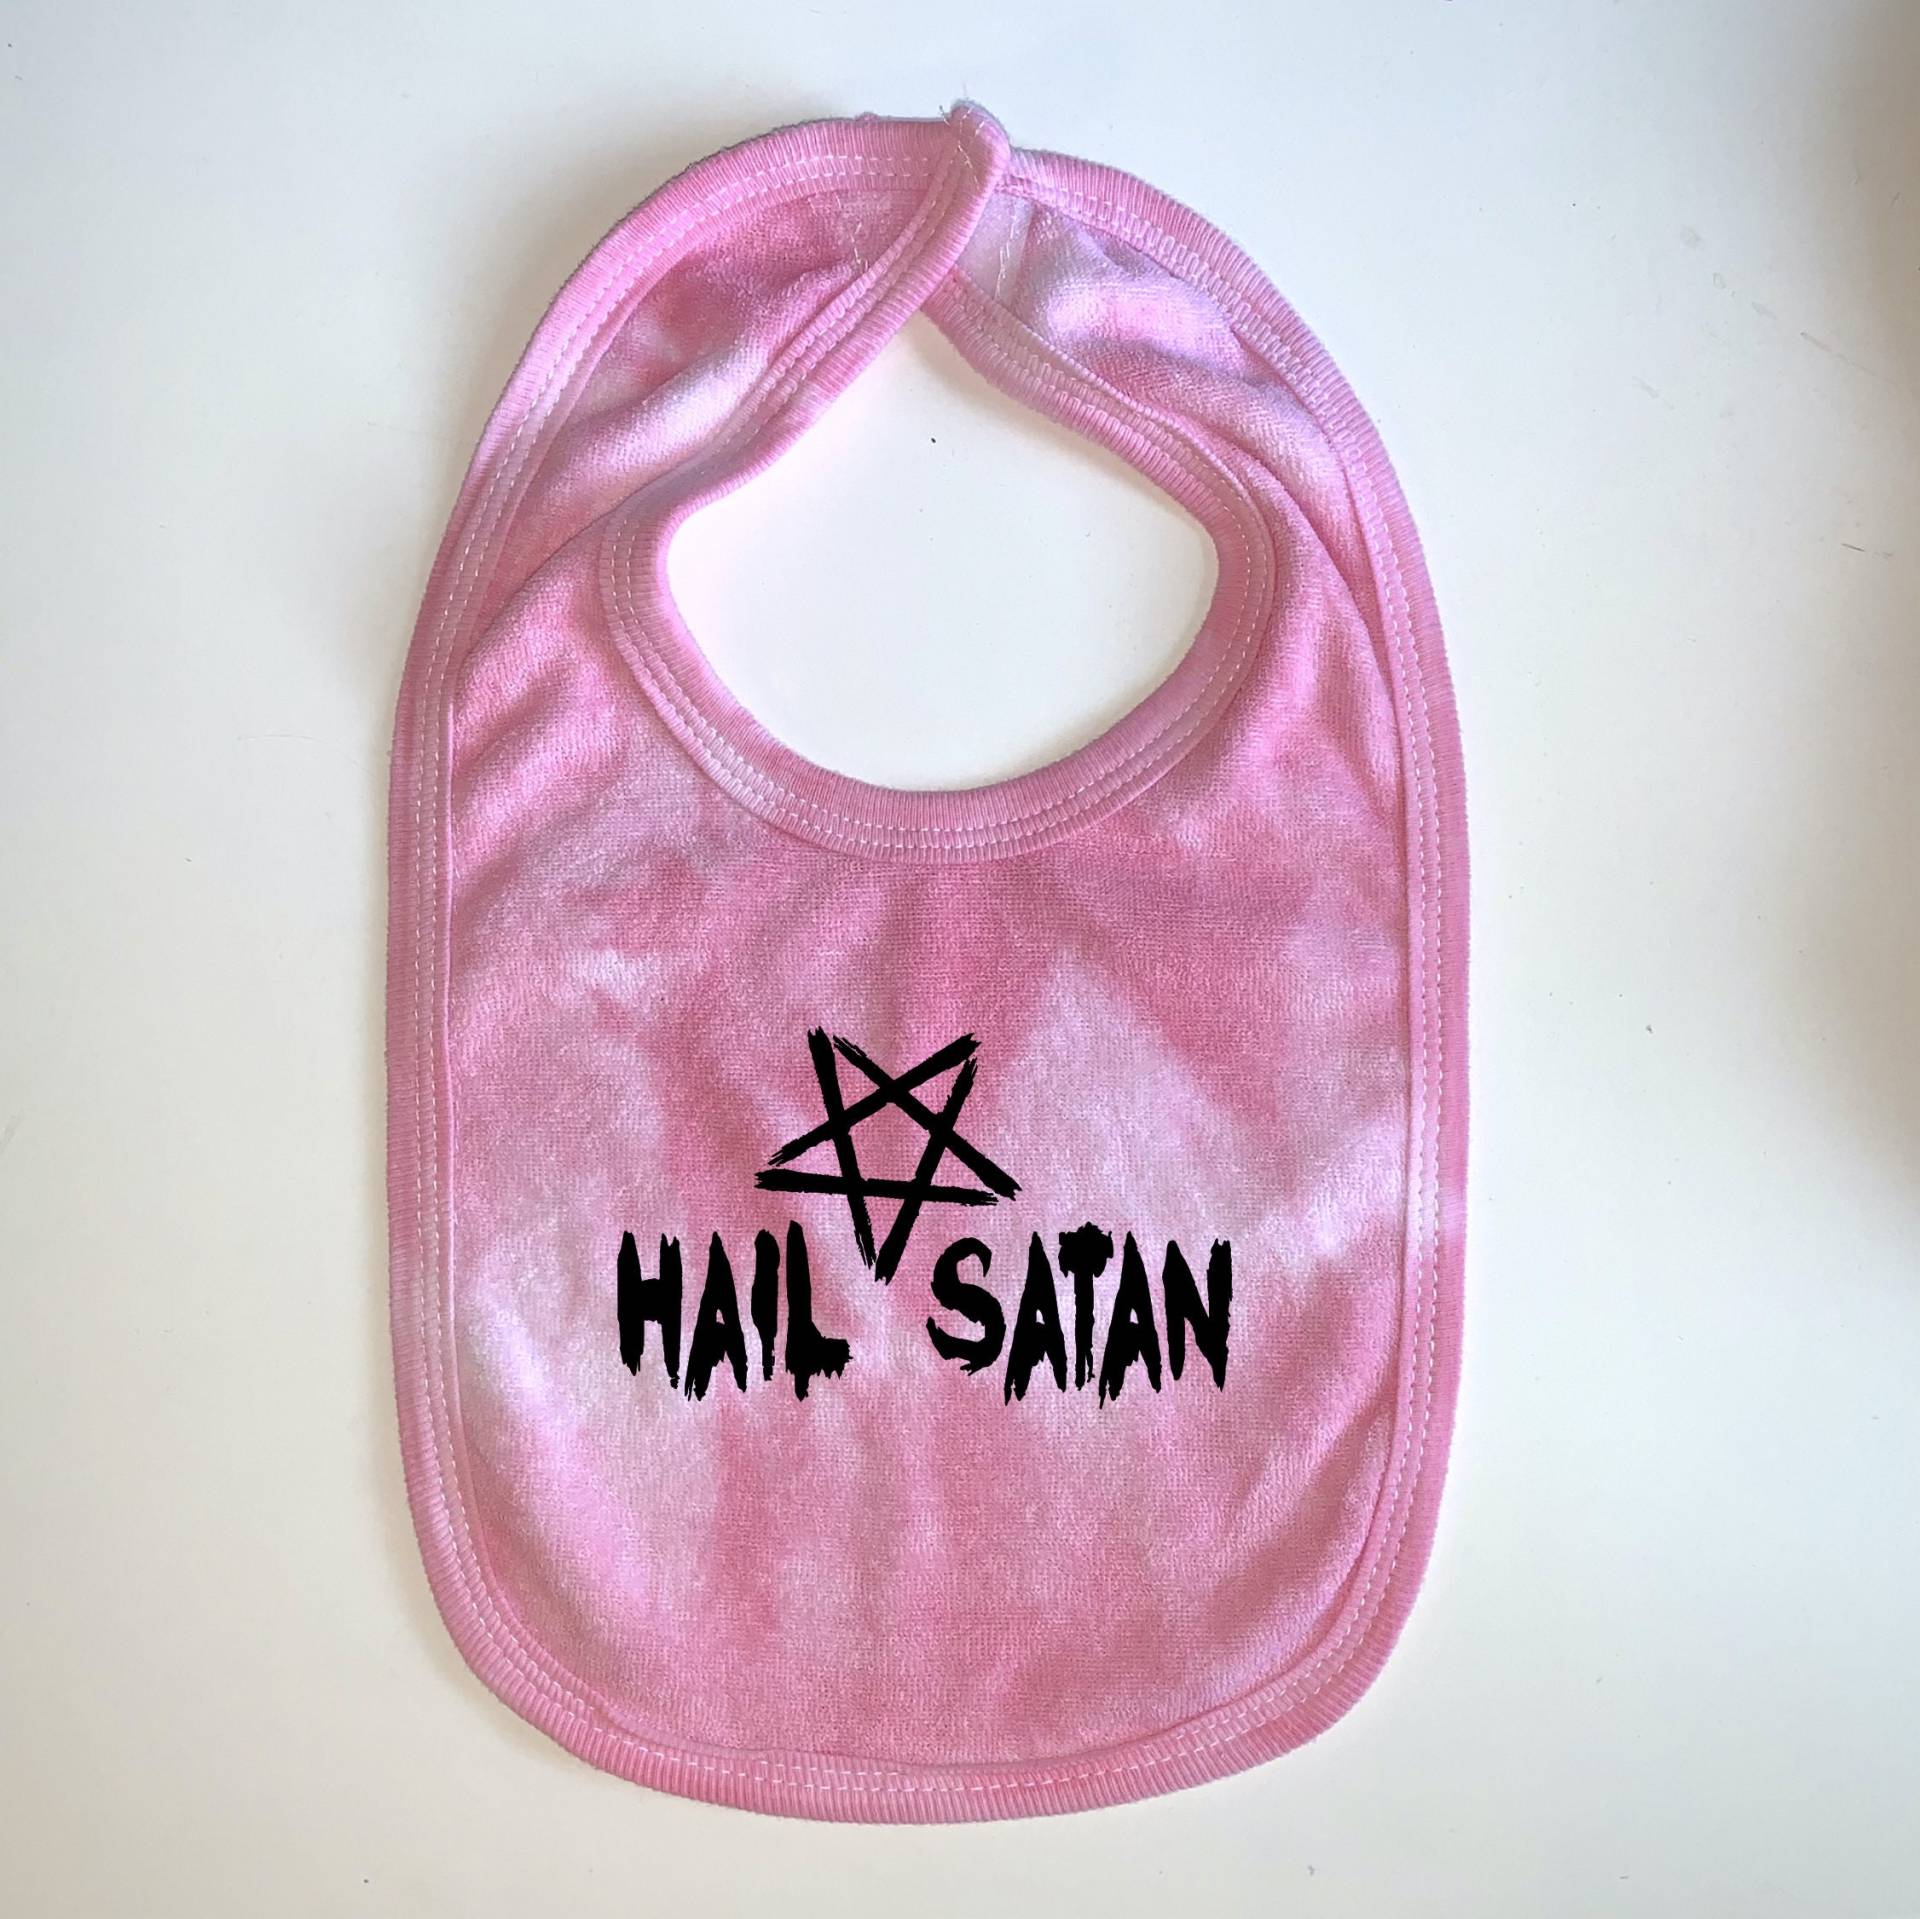 Hail Satan Baby Lätzchen Von 101 Damnations Shop von Etsy - 101DamnationsShop